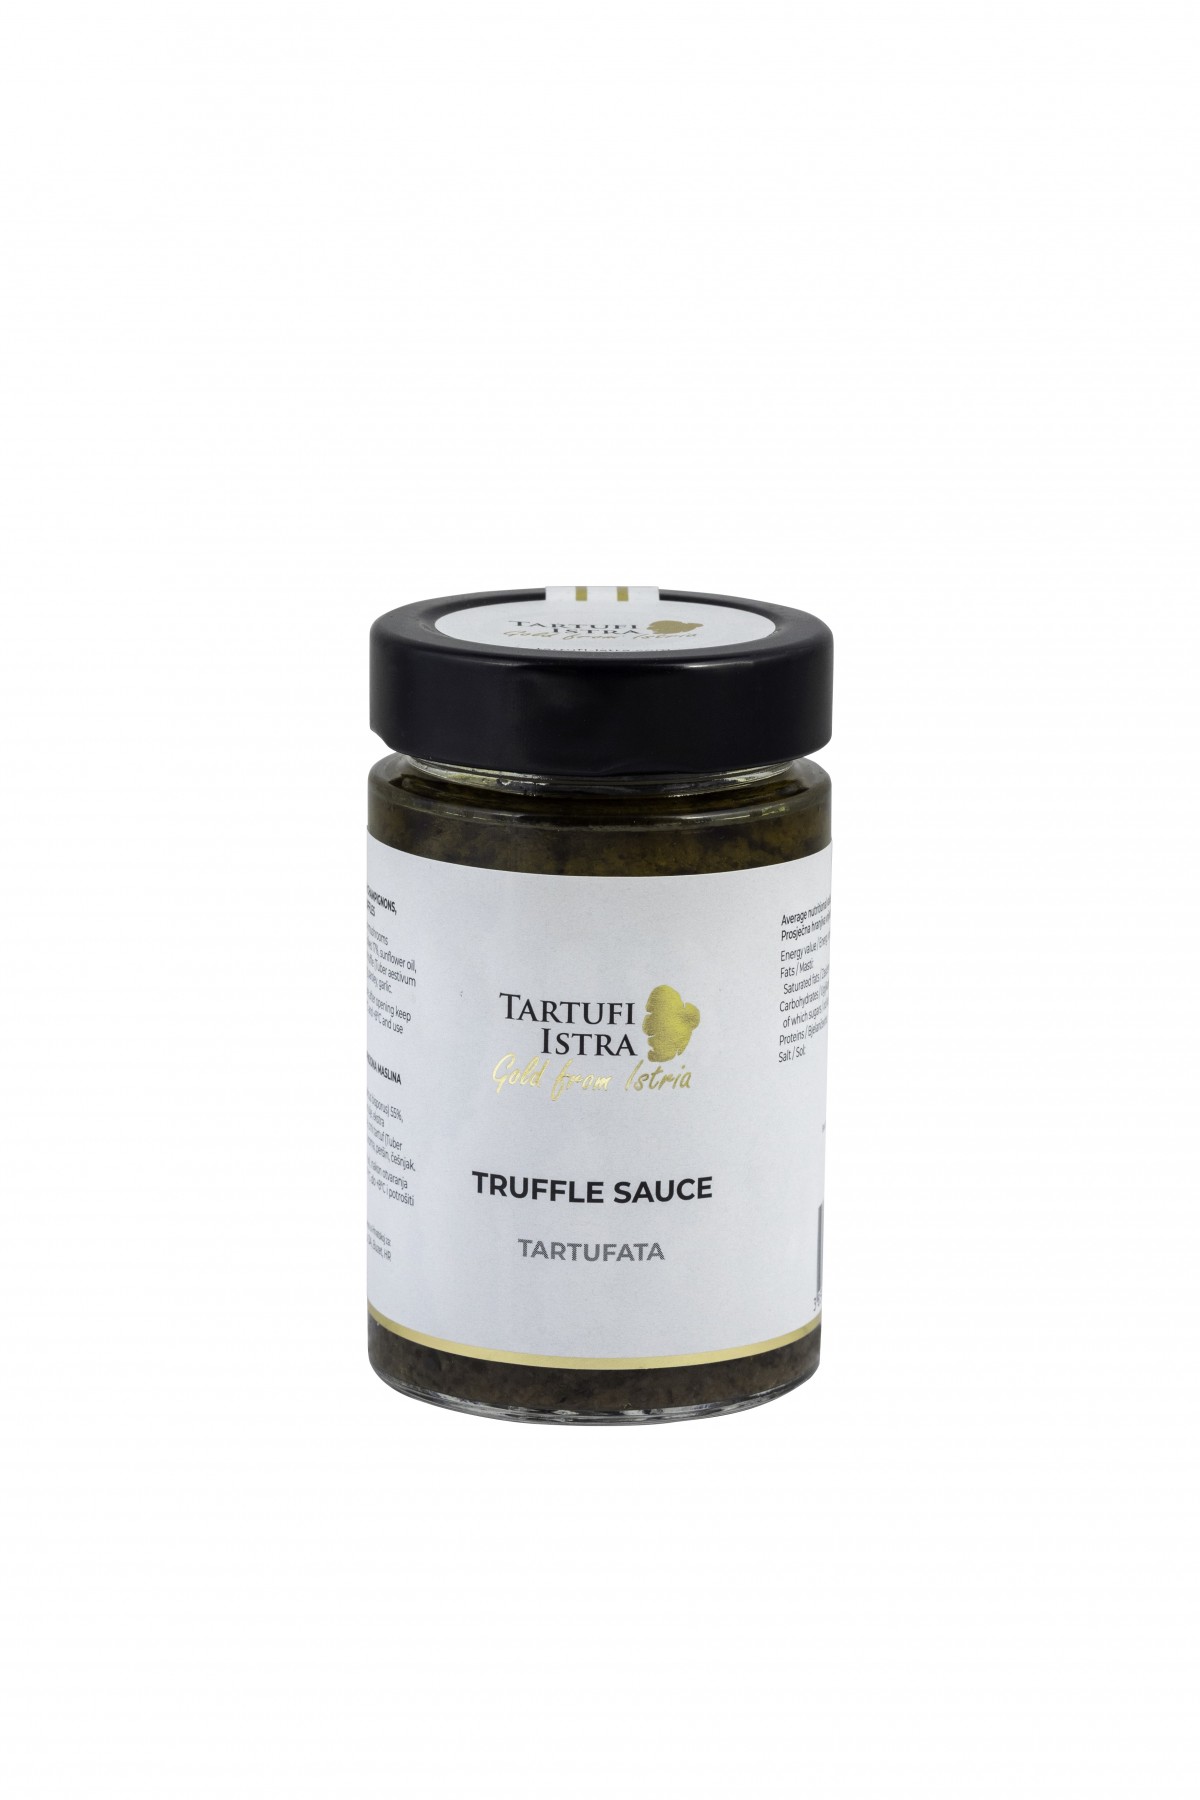 Truffle sauce, Tartufi Istra